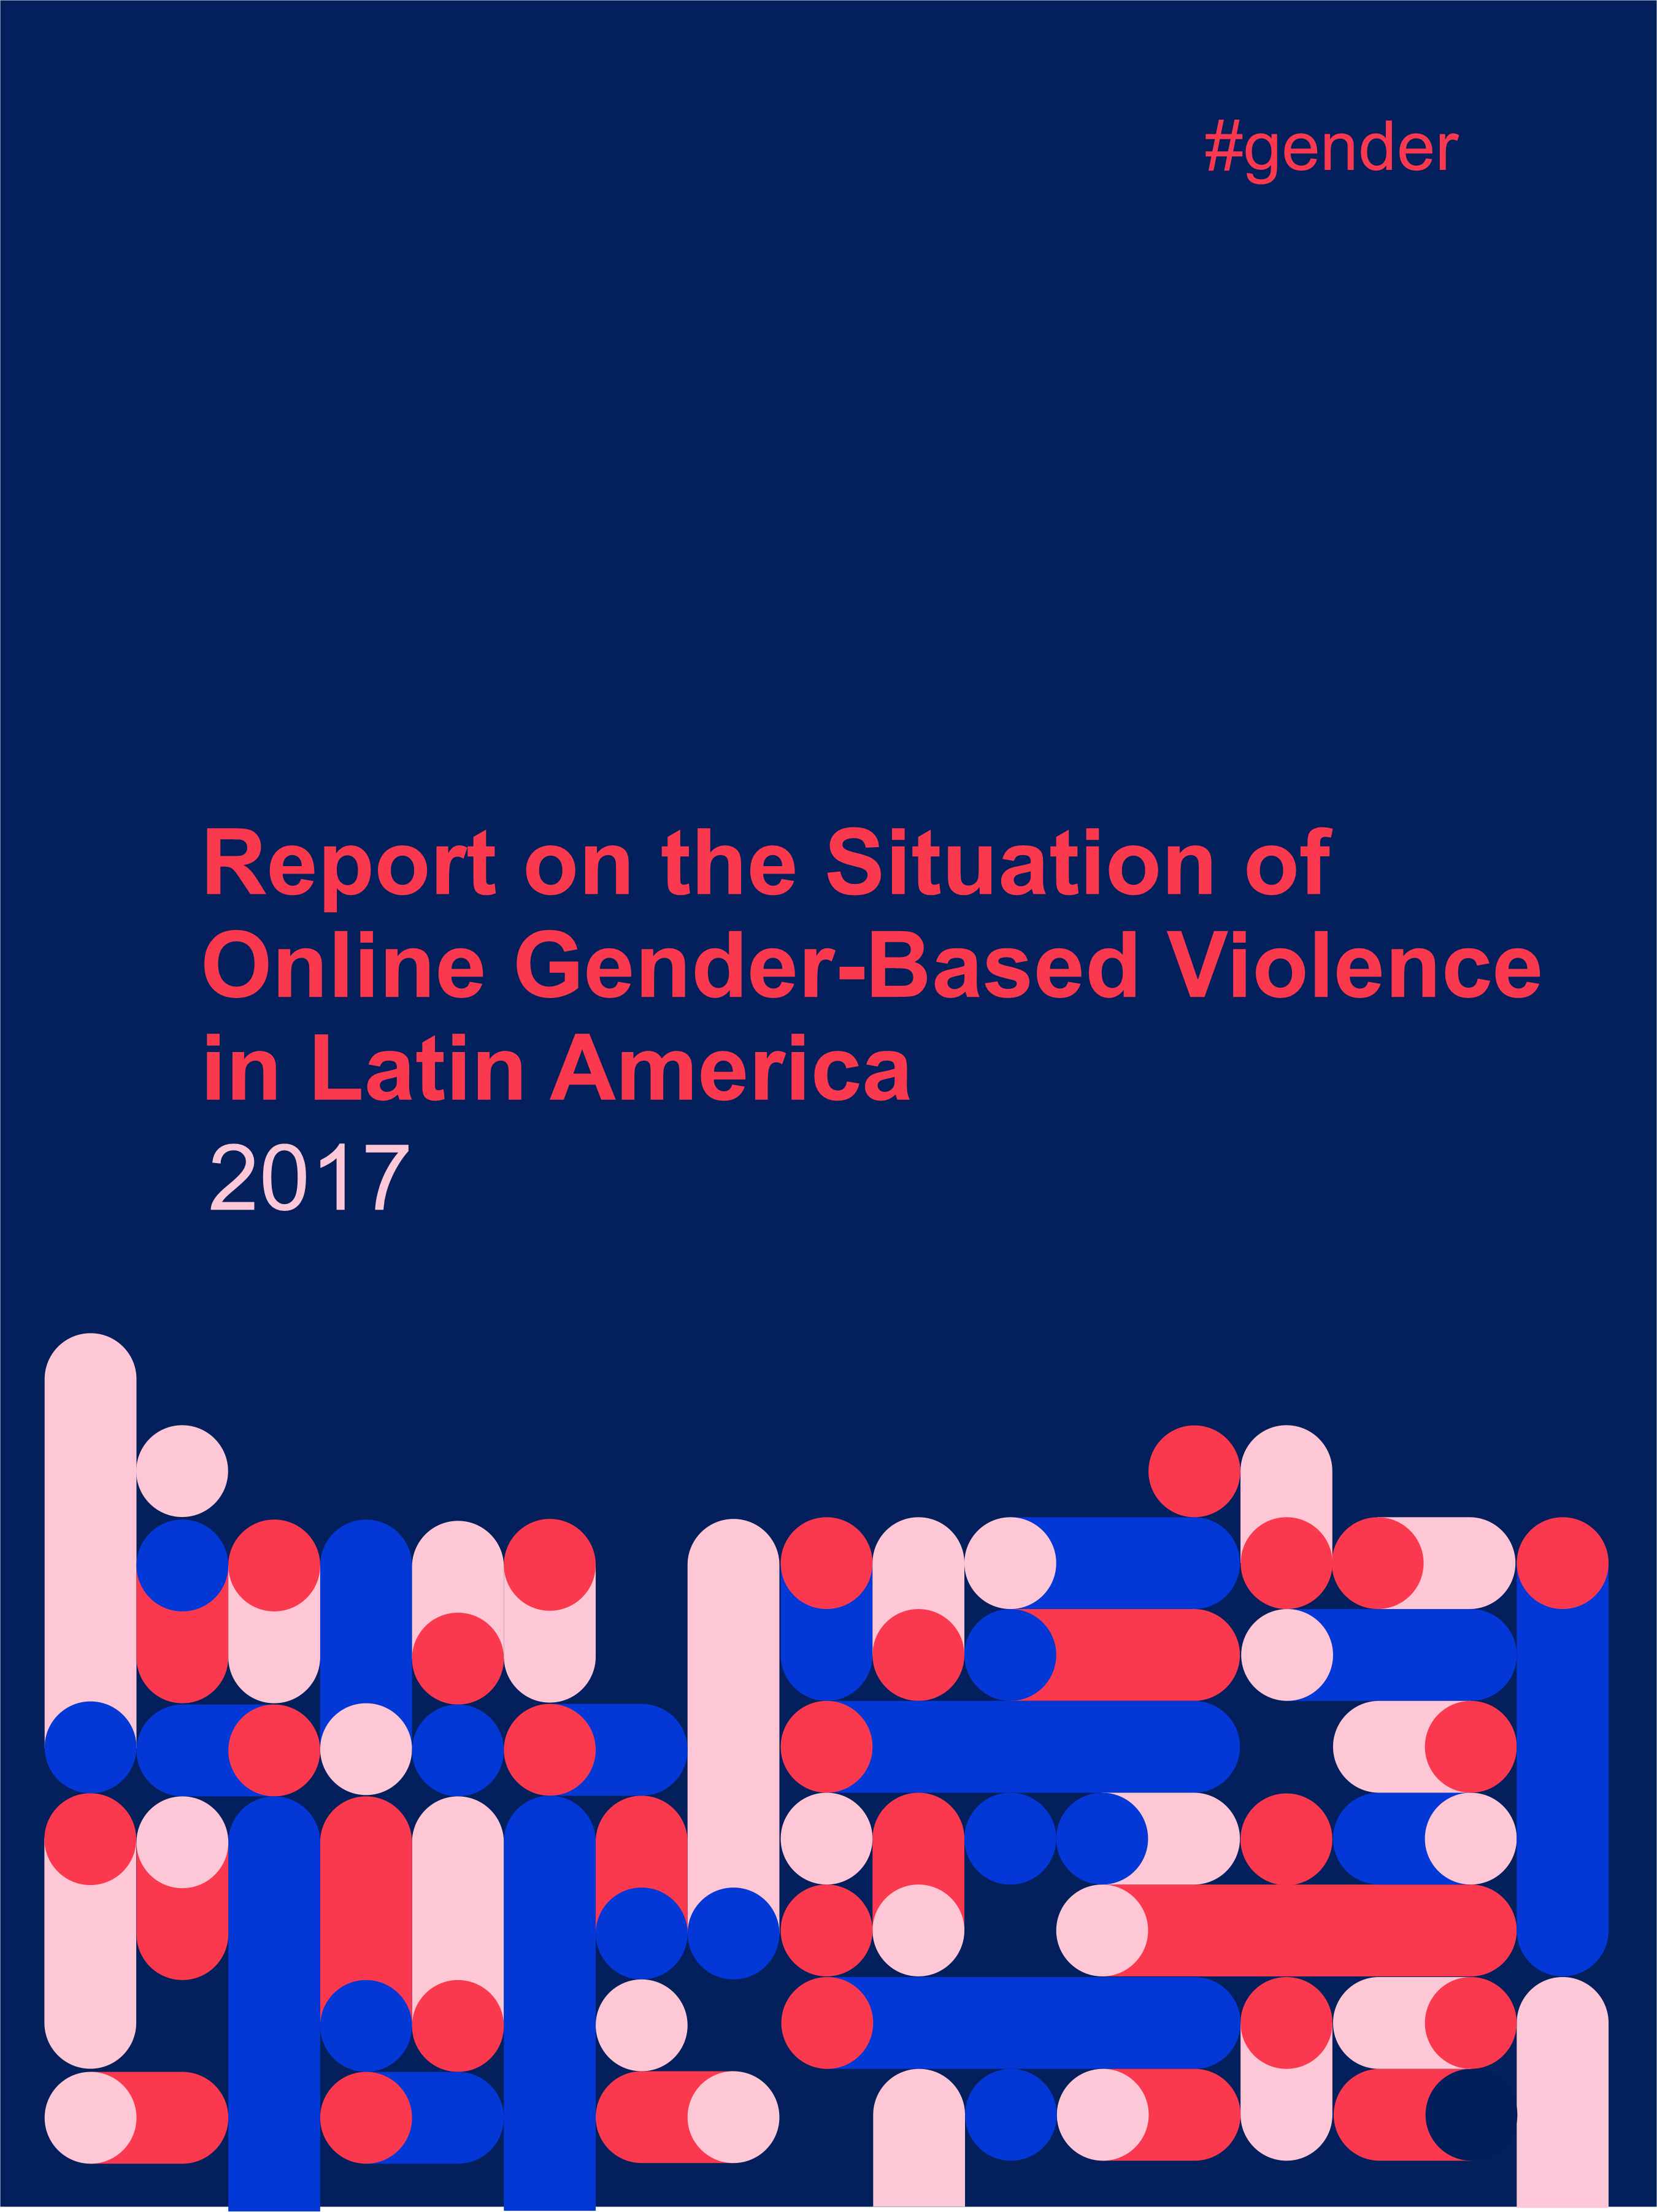 Cover report on online gender-based violence in Latam